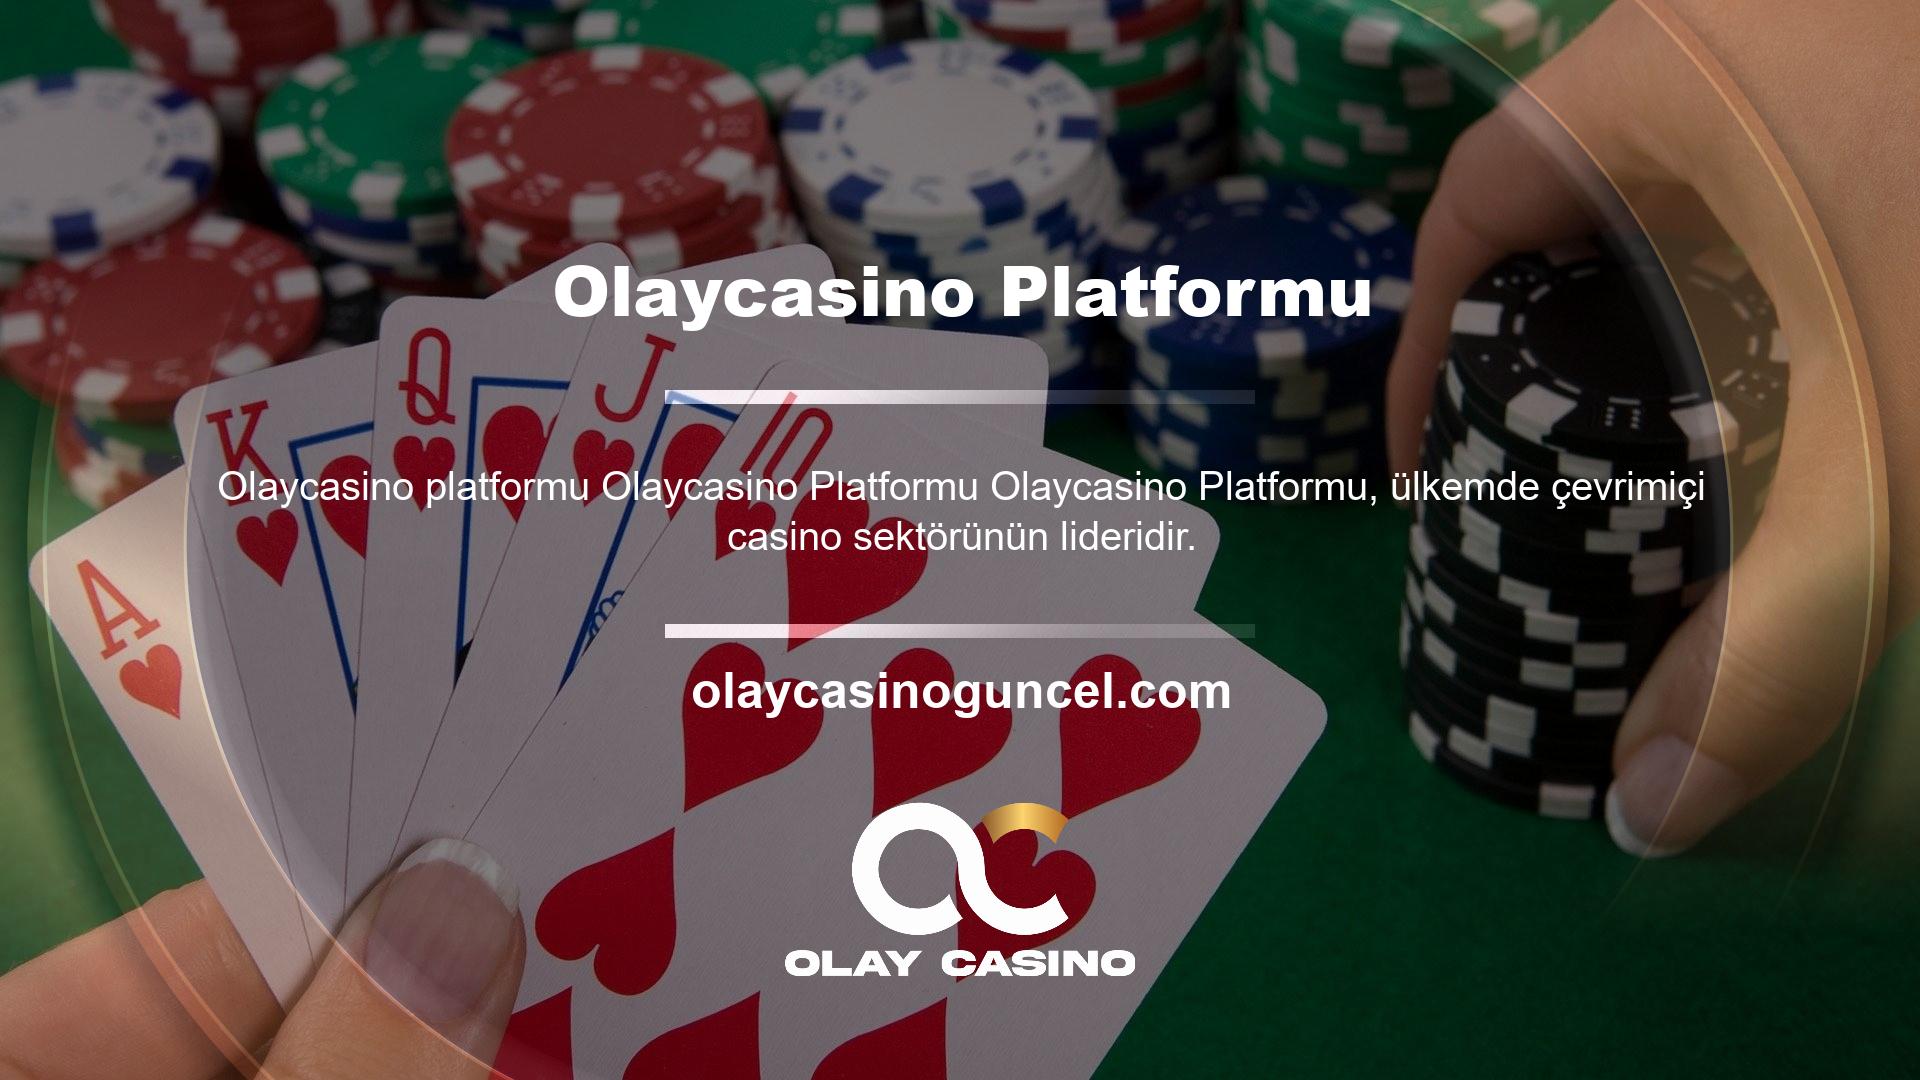 Olaycasino platformu